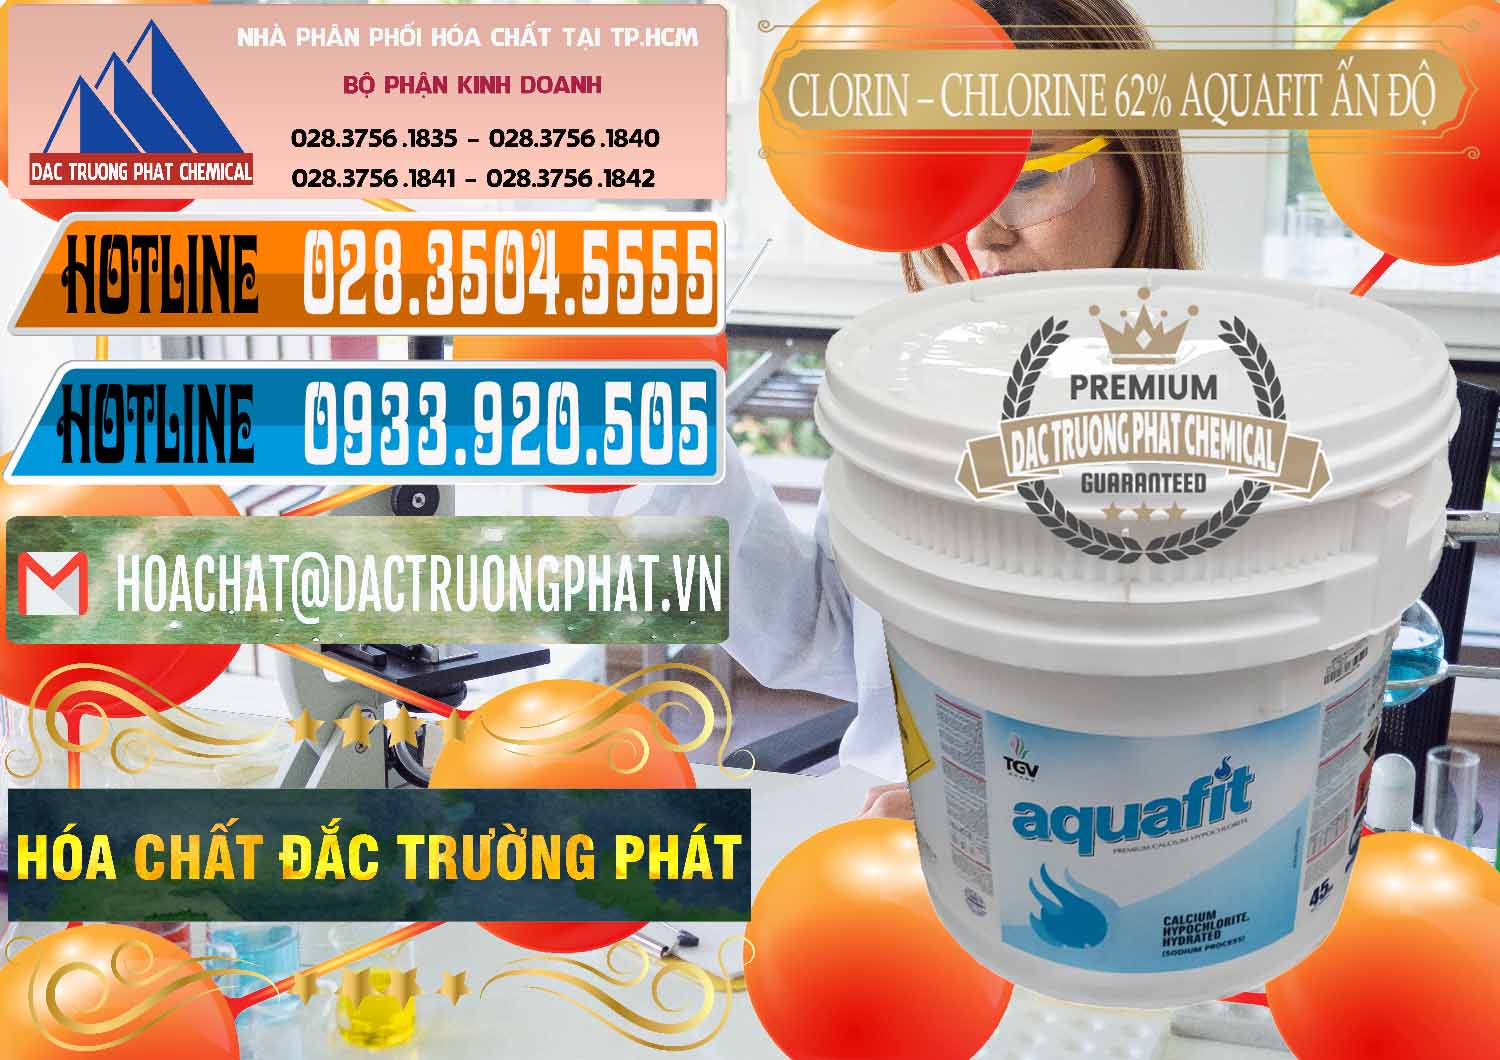 Công ty chuyên bán ( cung ứng ) Clorin - Chlorine 62% Aquafit Thùng Lùn Ấn Độ India - 0057 - Nơi nhập khẩu ( phân phối ) hóa chất tại TP.HCM - stmp.net